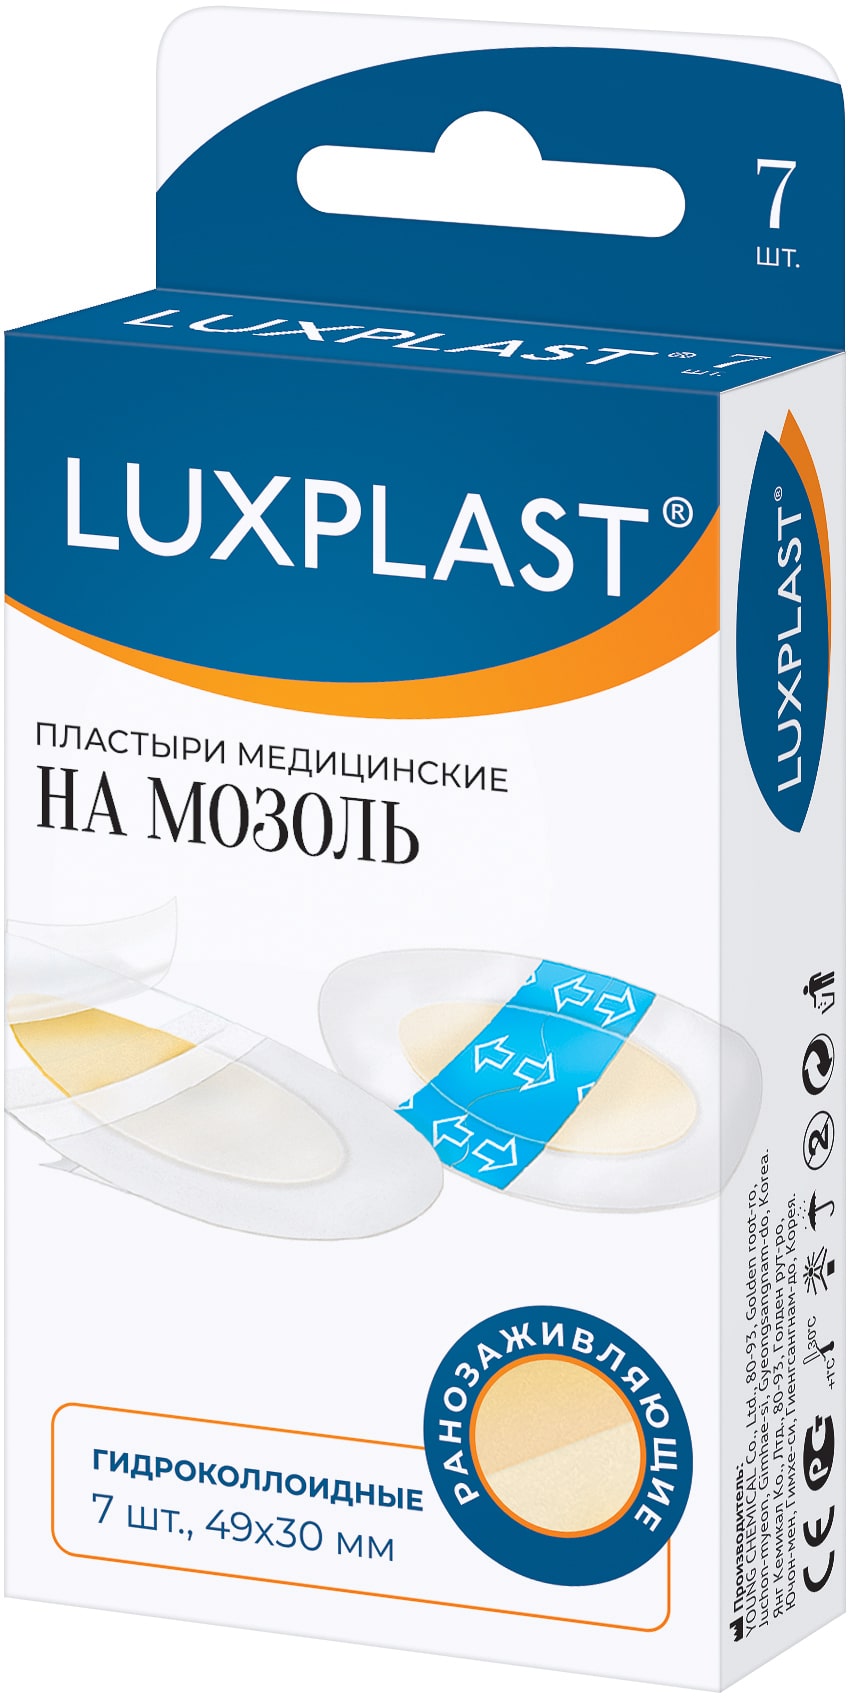 Luxplast Пластыри медицинские гидроколлоидные на мозоль 49х3